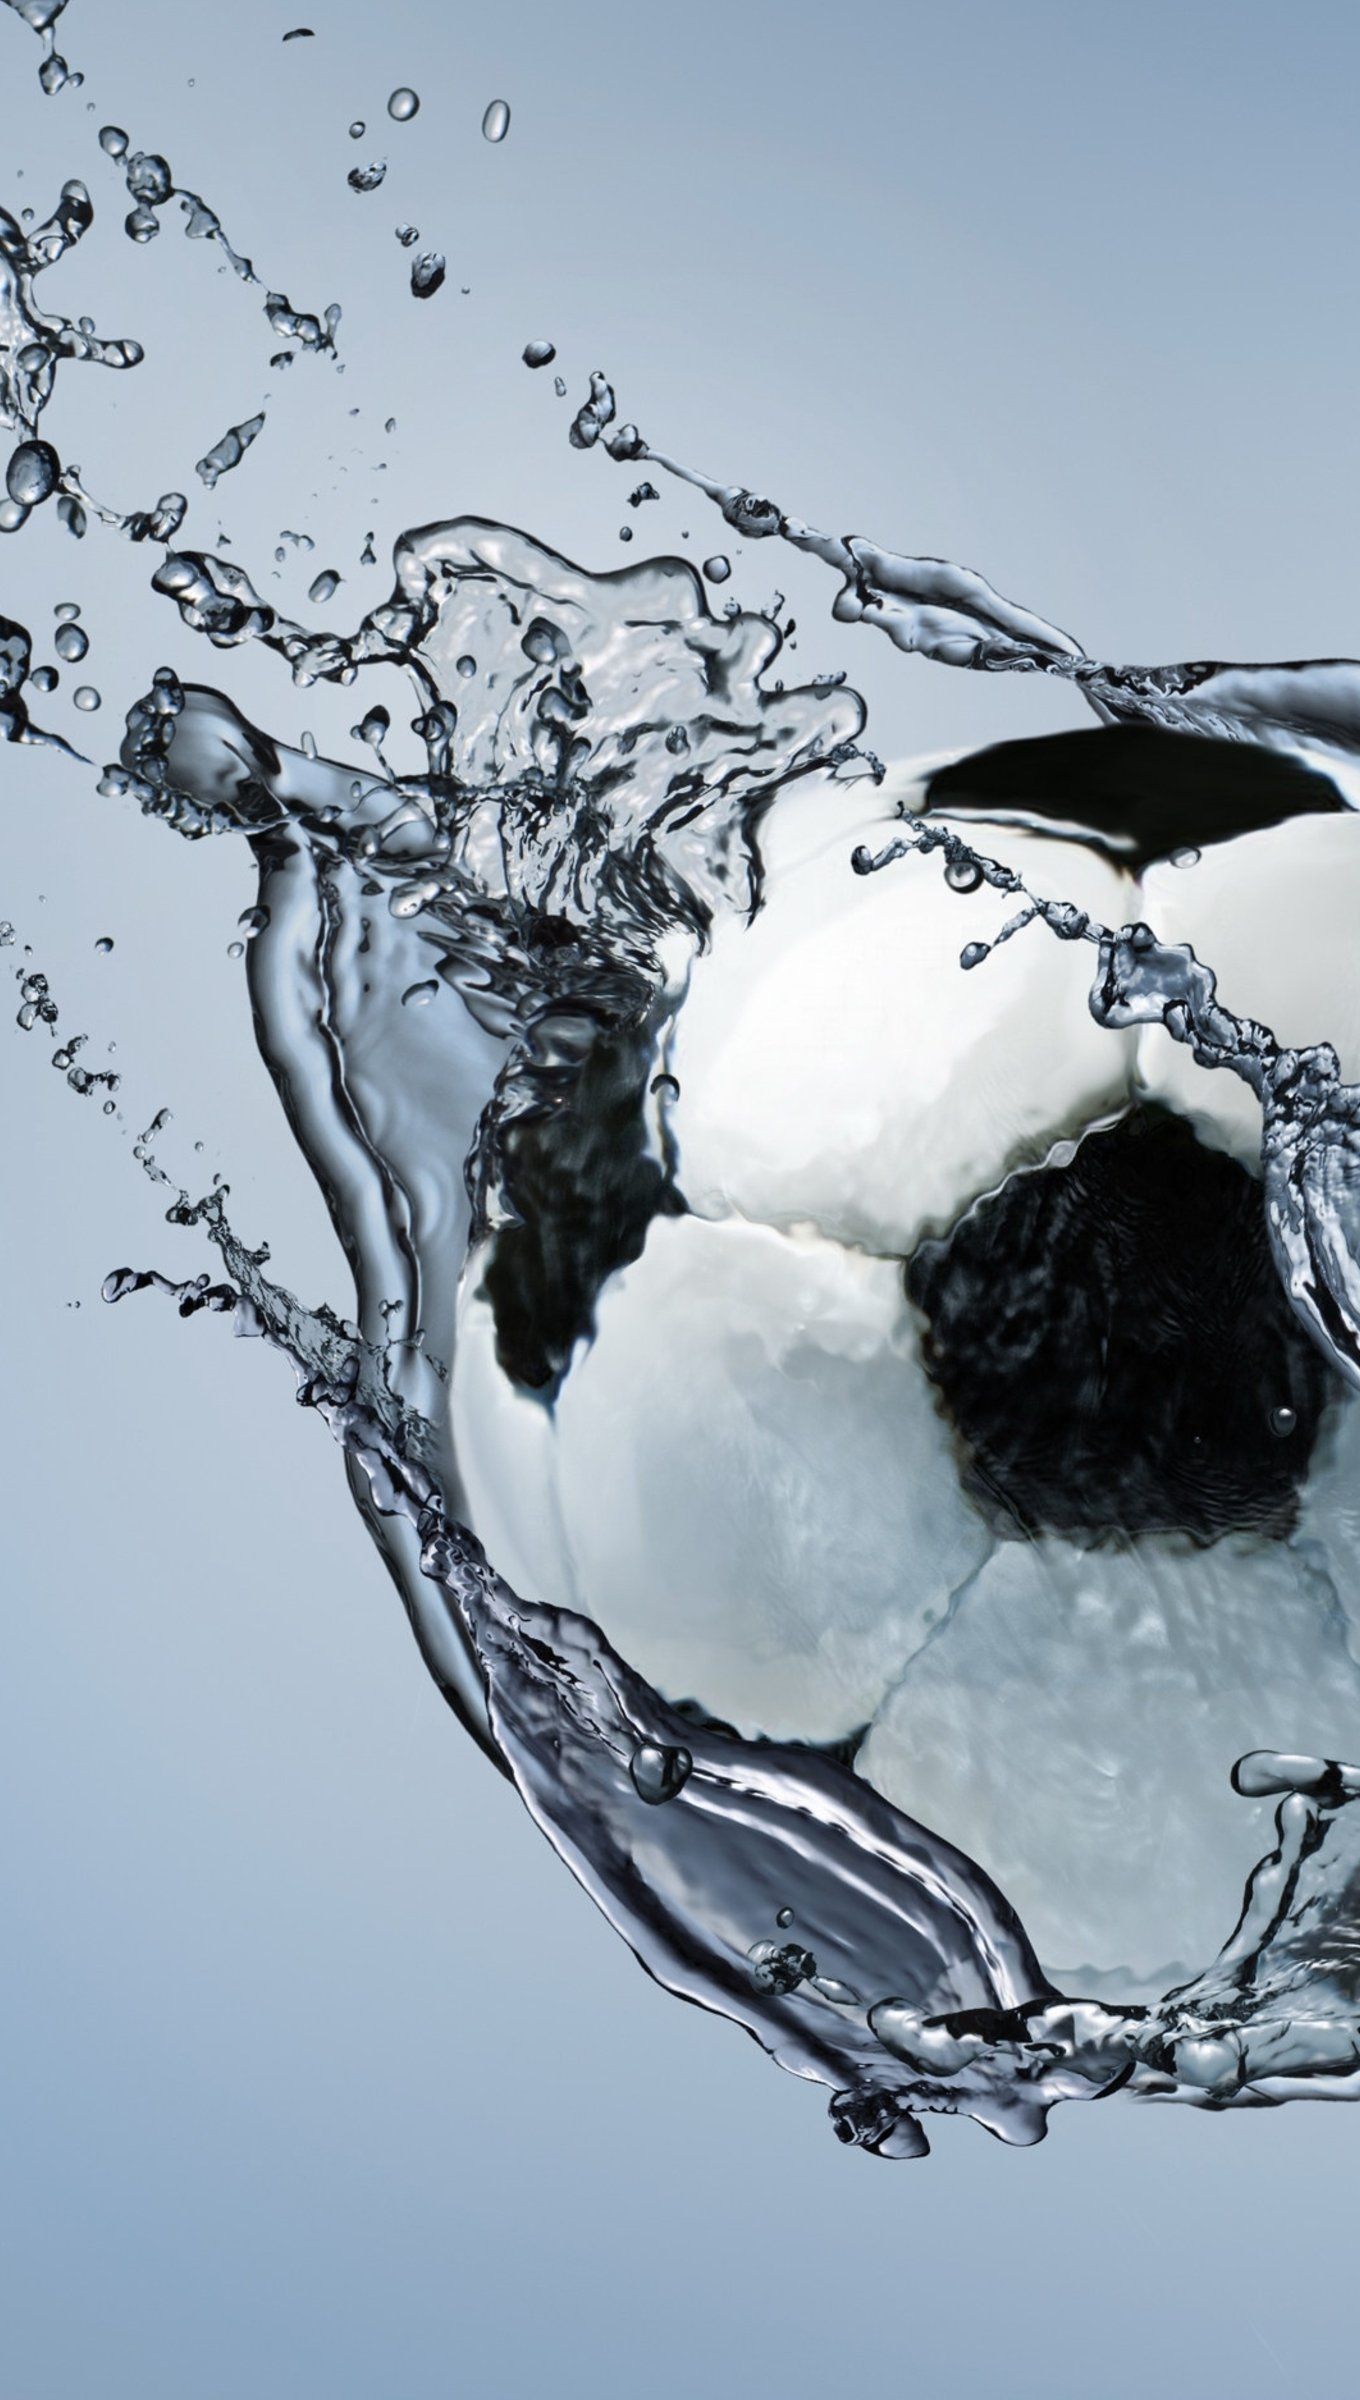 Soccer Ball going through water Wallpaper 4k Ultra HD